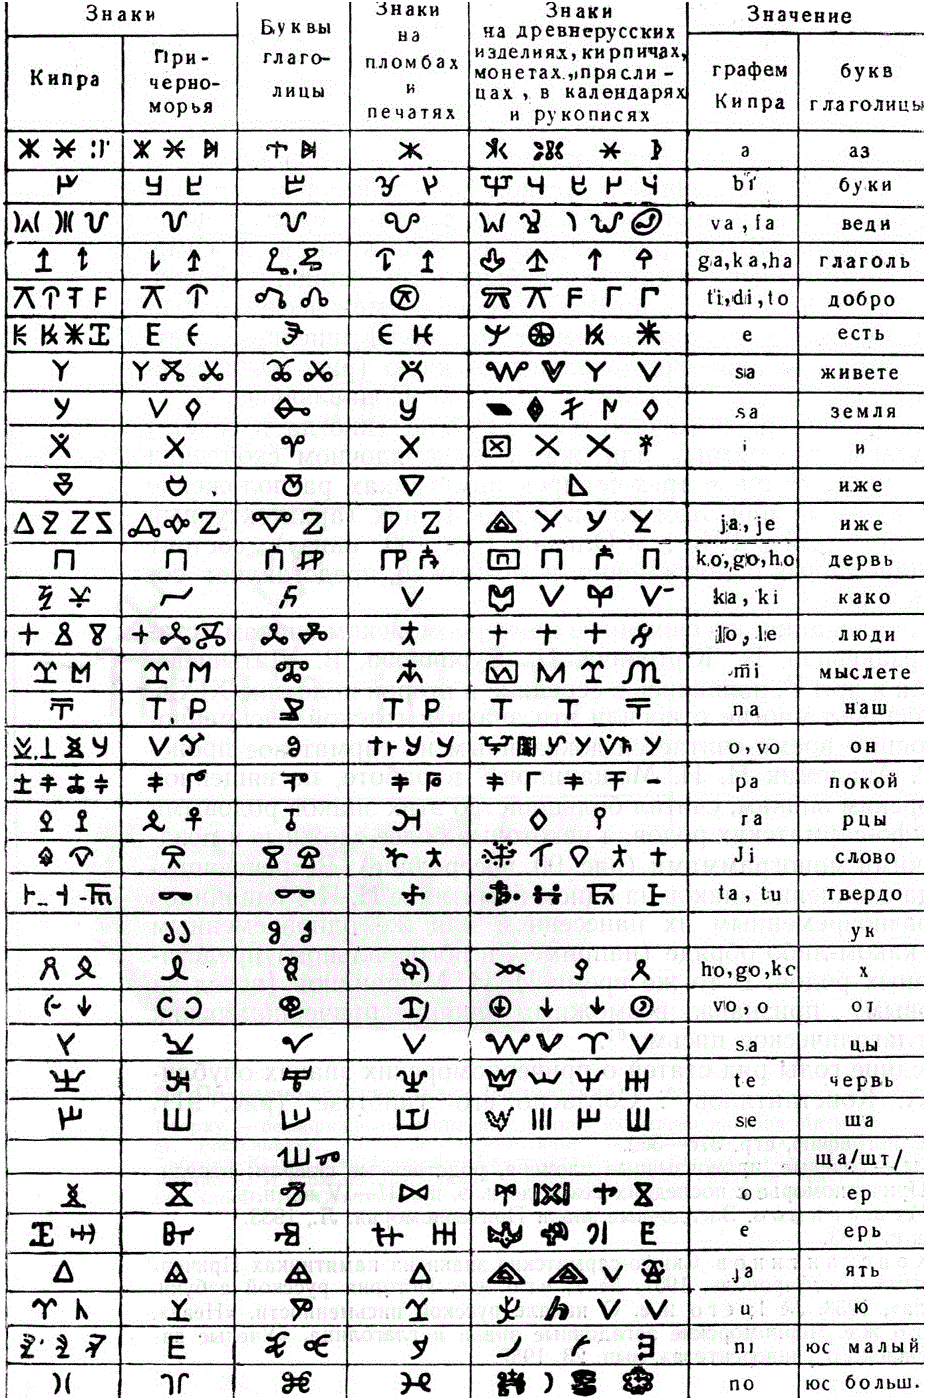 Сравнение глаголицы с кипрскими, сарматскими и причерноморскими знаками